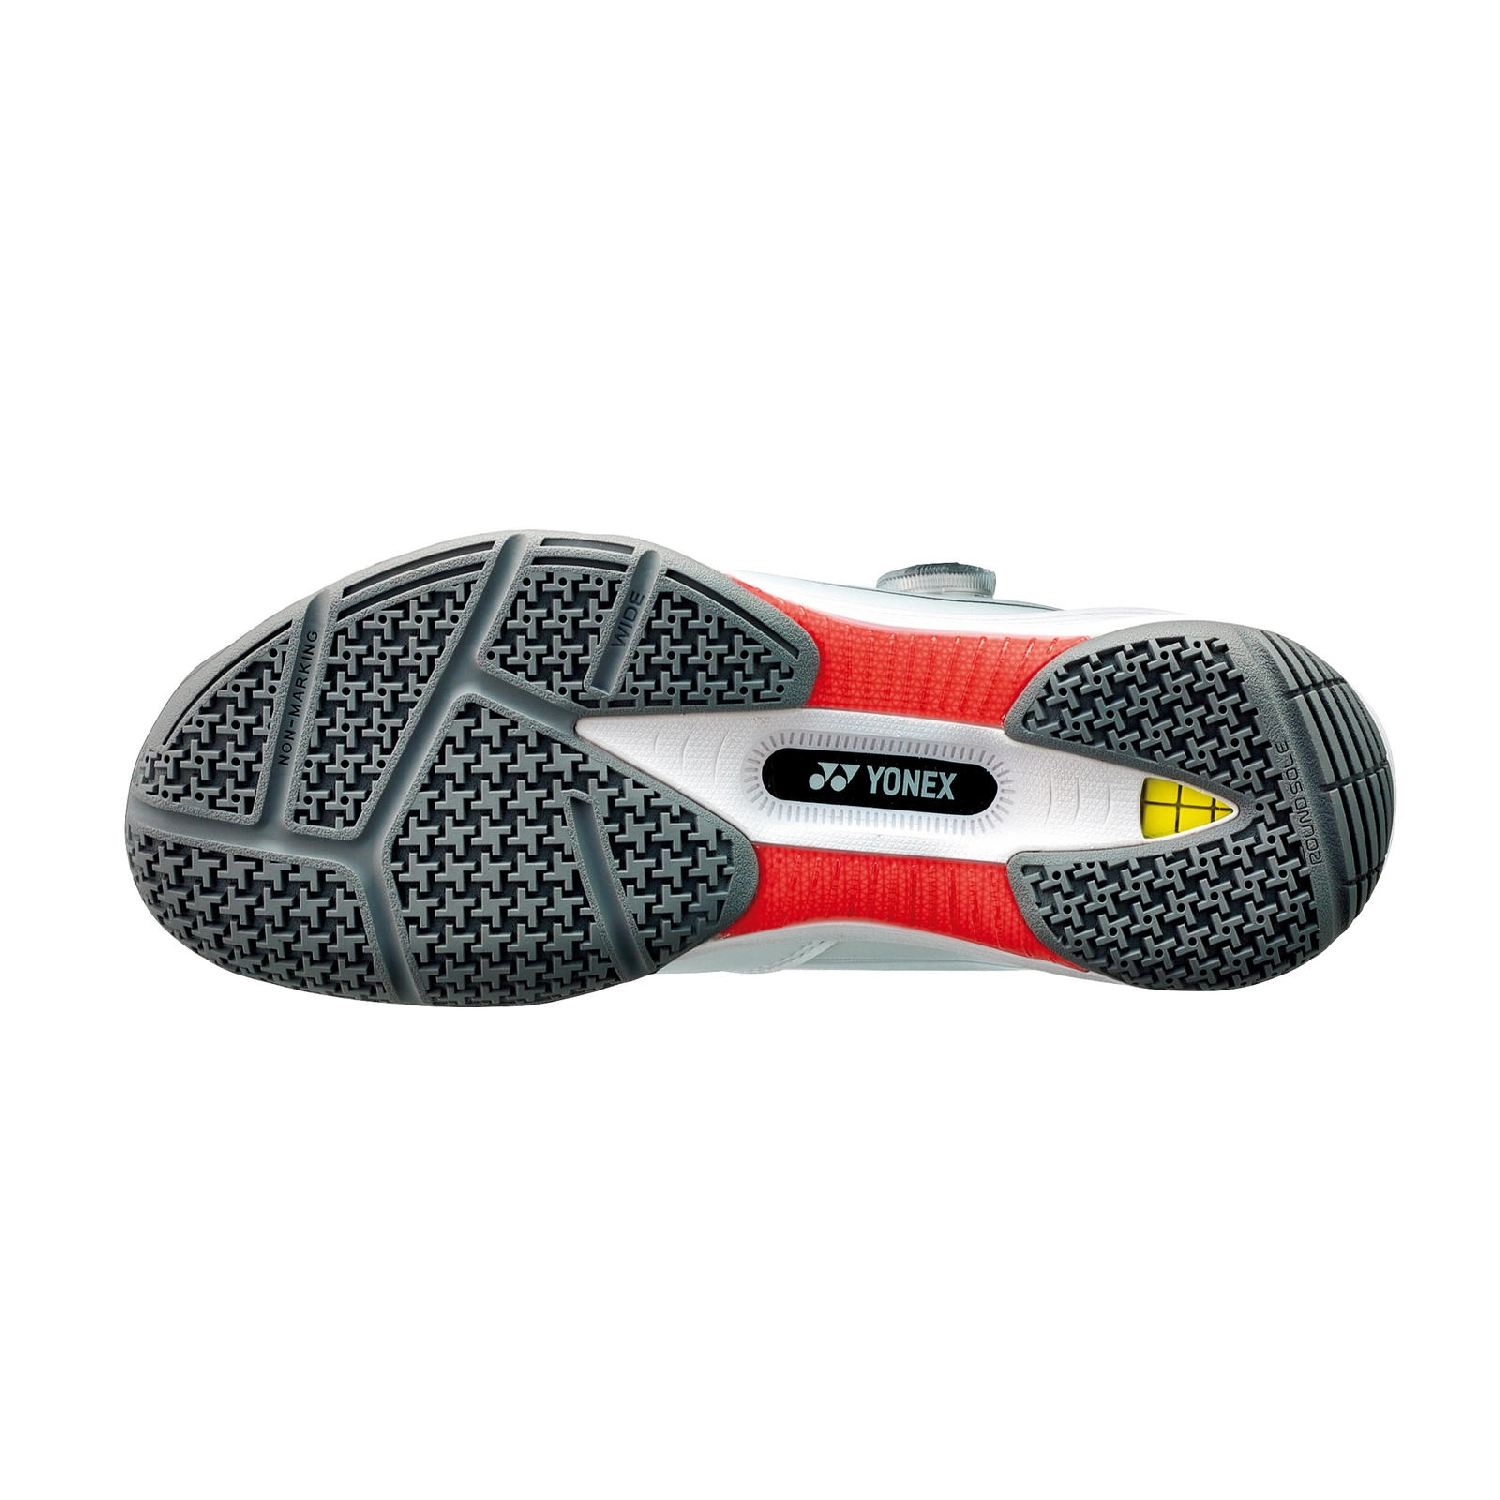 Giày cầu lông Yonex chính hãng SHB 88 Dial 2 Wide - Trắng Xám